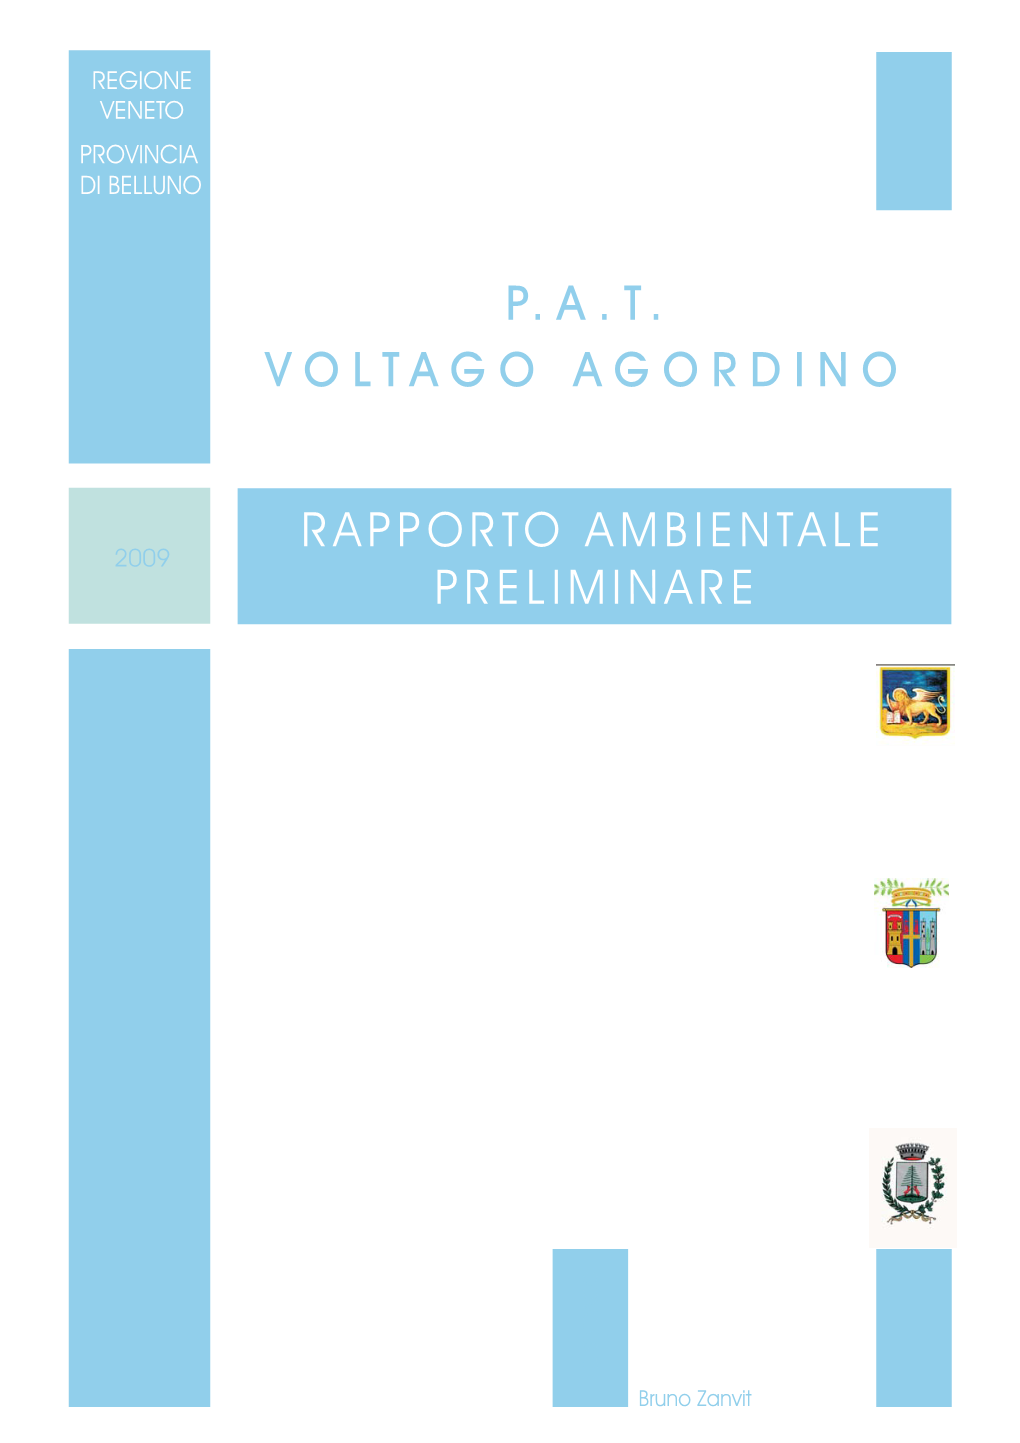 P.A.T. Rapporto Ambientale Preliminare Voltago Agordino